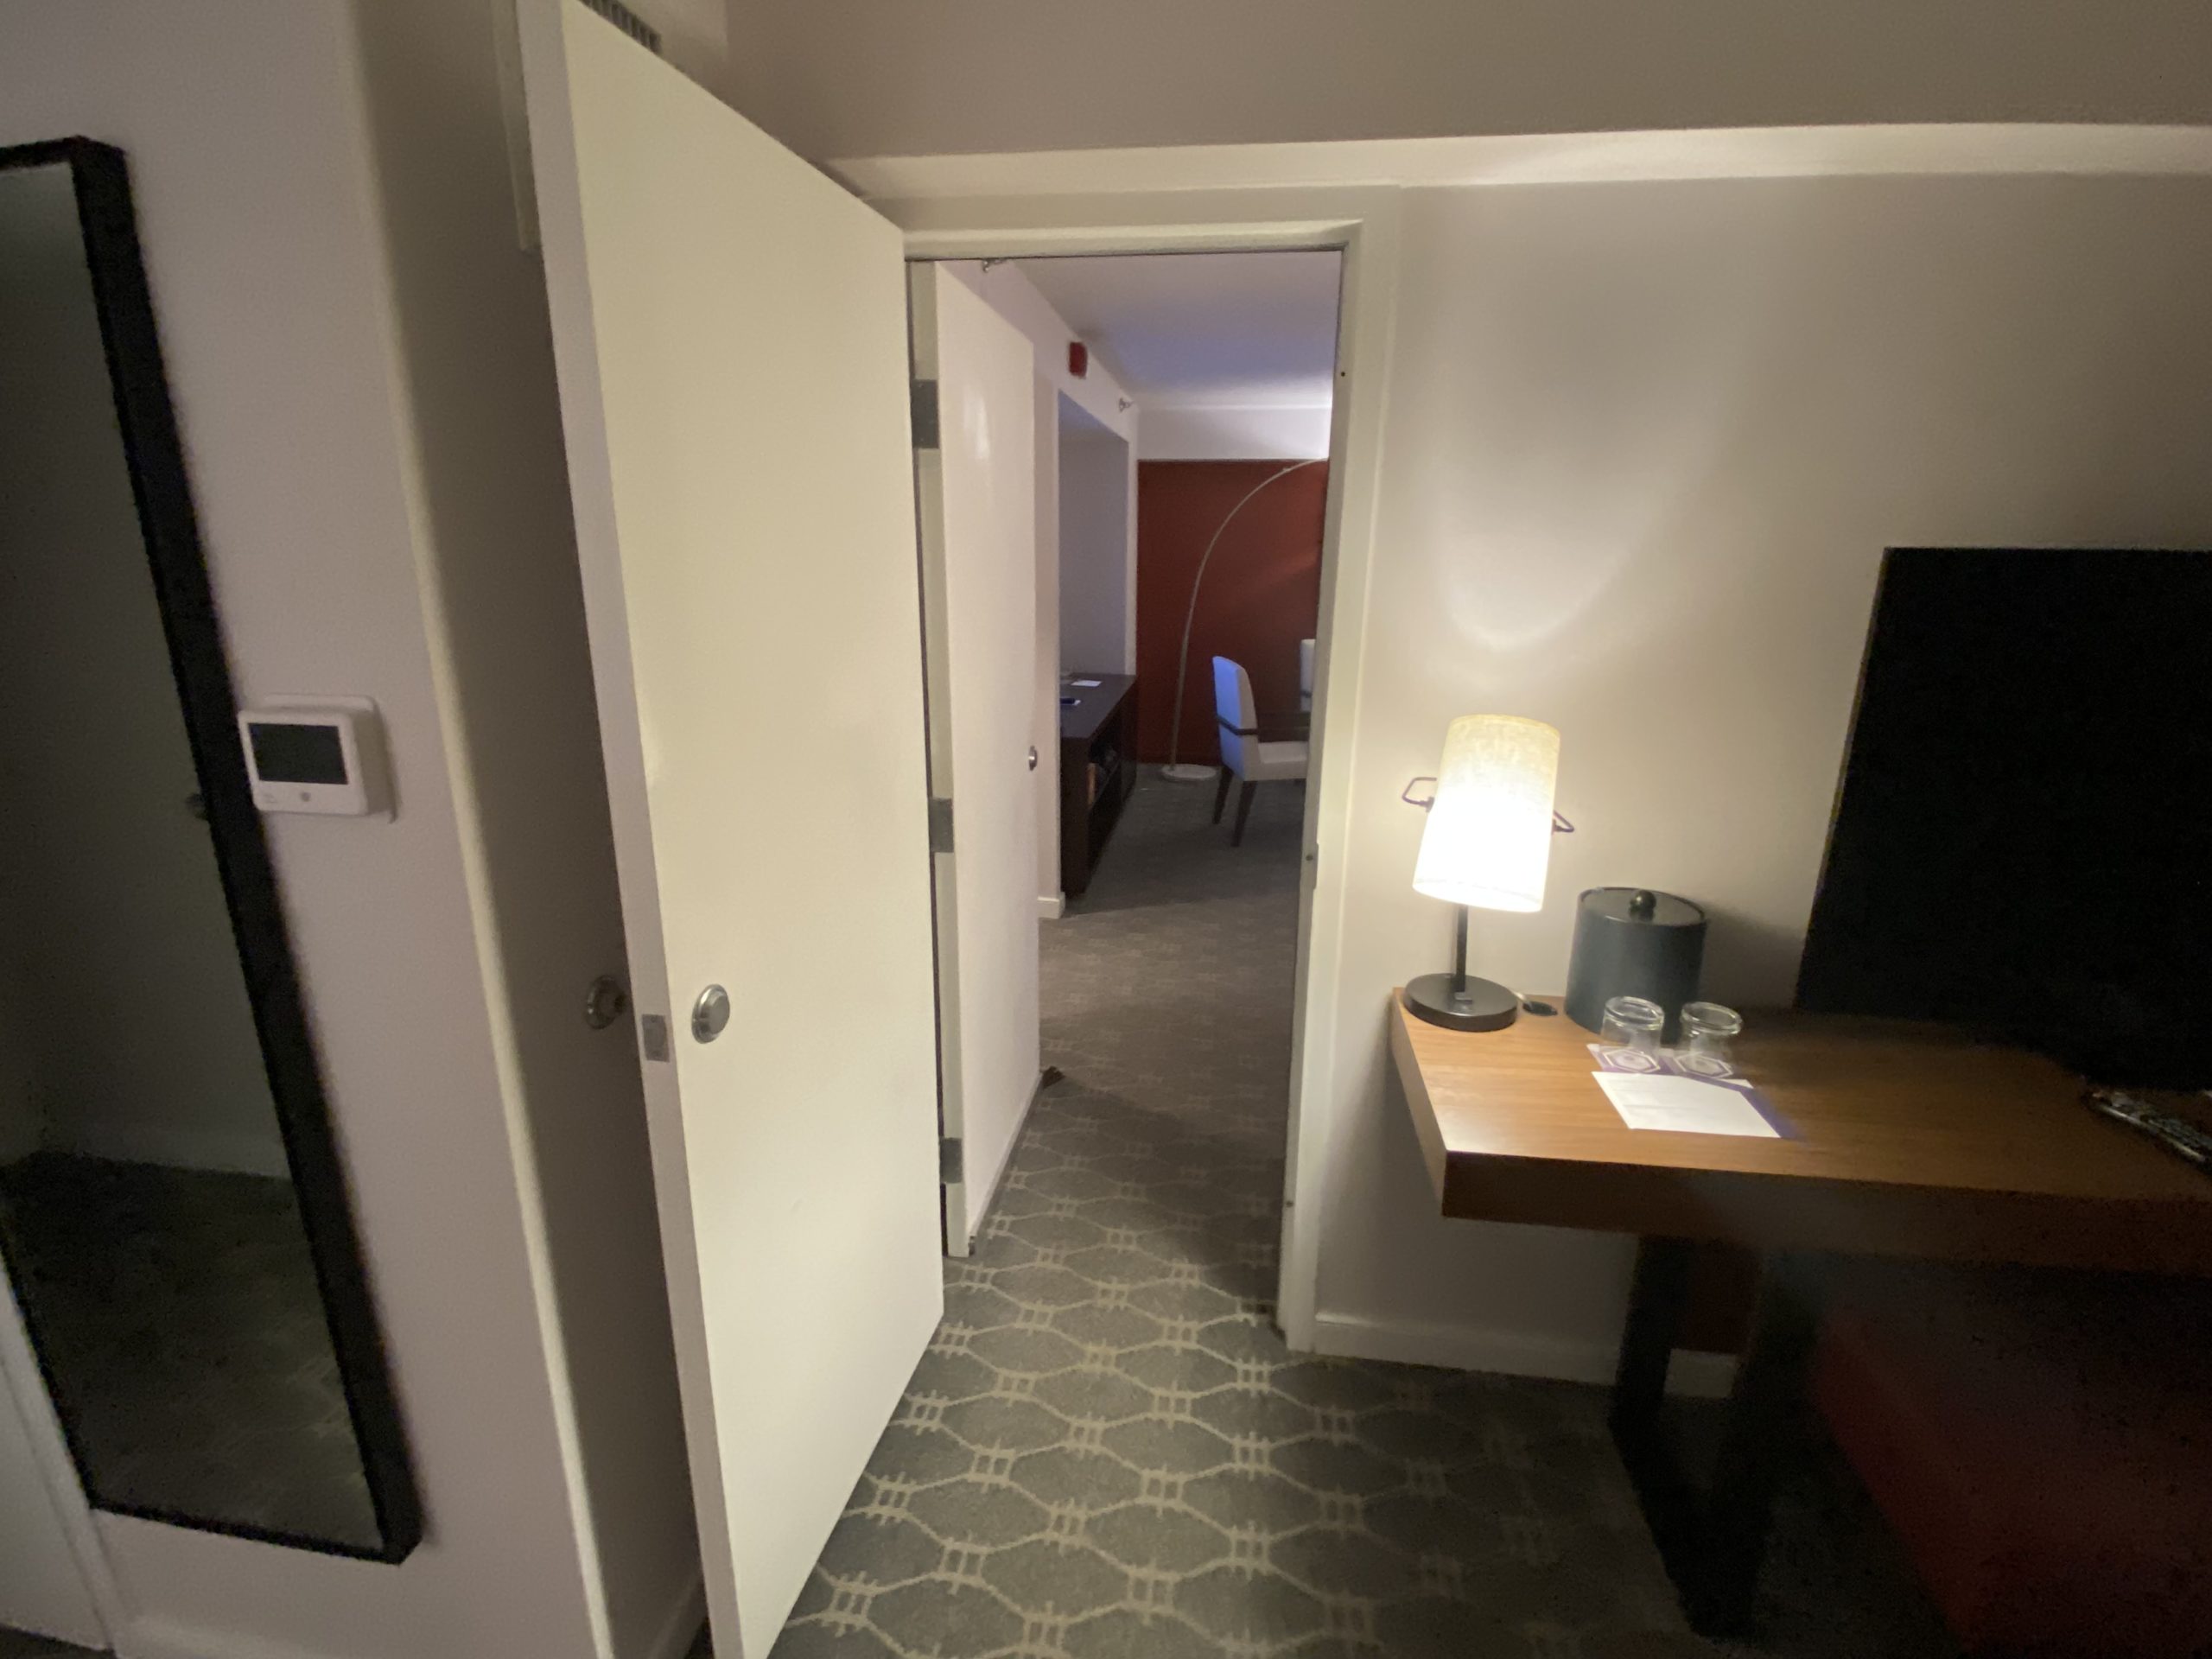 a door open to a room